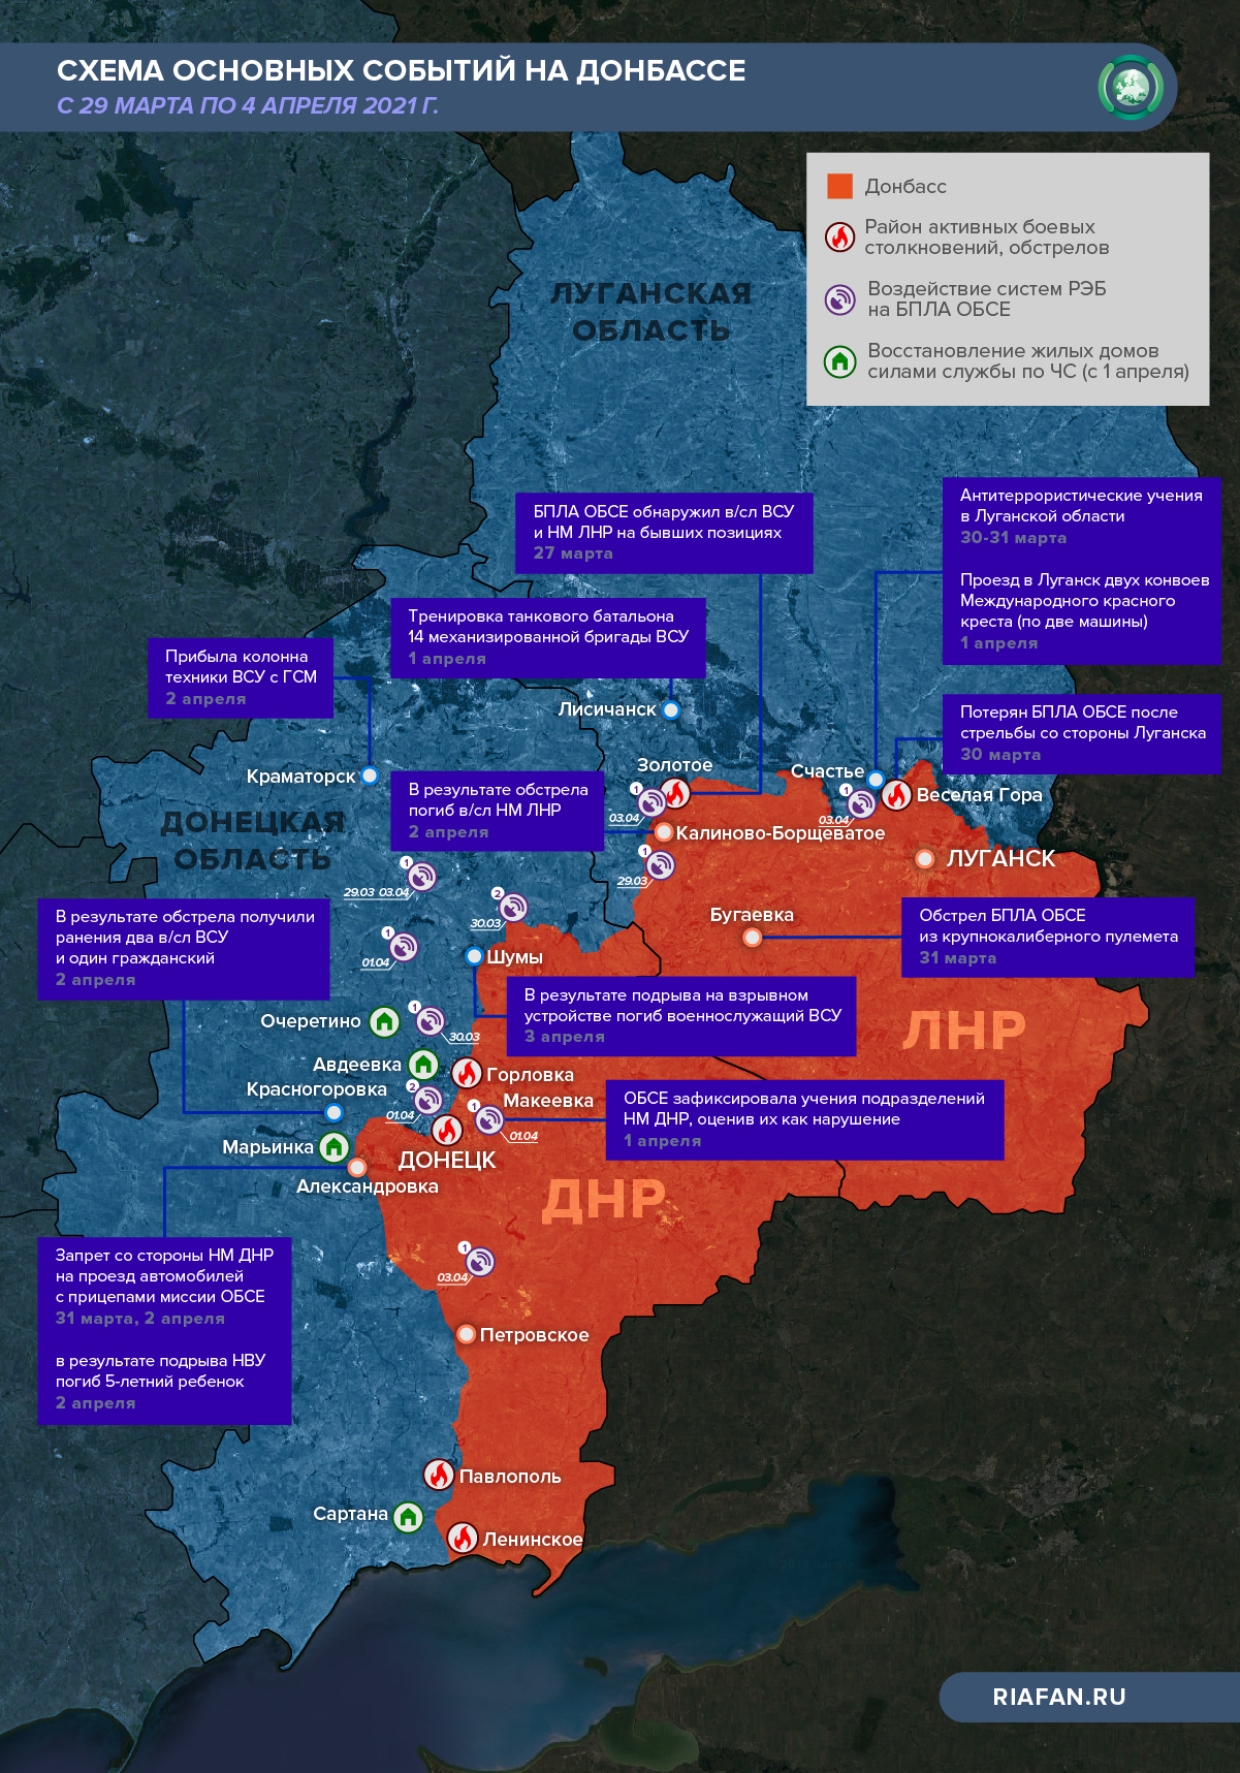 Сколько рф погибло на украине сегодняшний. Оперативная обстановка Донбасс. Карта оперативной обстановки на Донбассе. Карта оперативной обстановки на Донбассе сейчас. Оперативная обстановка на Украине Донбасс.